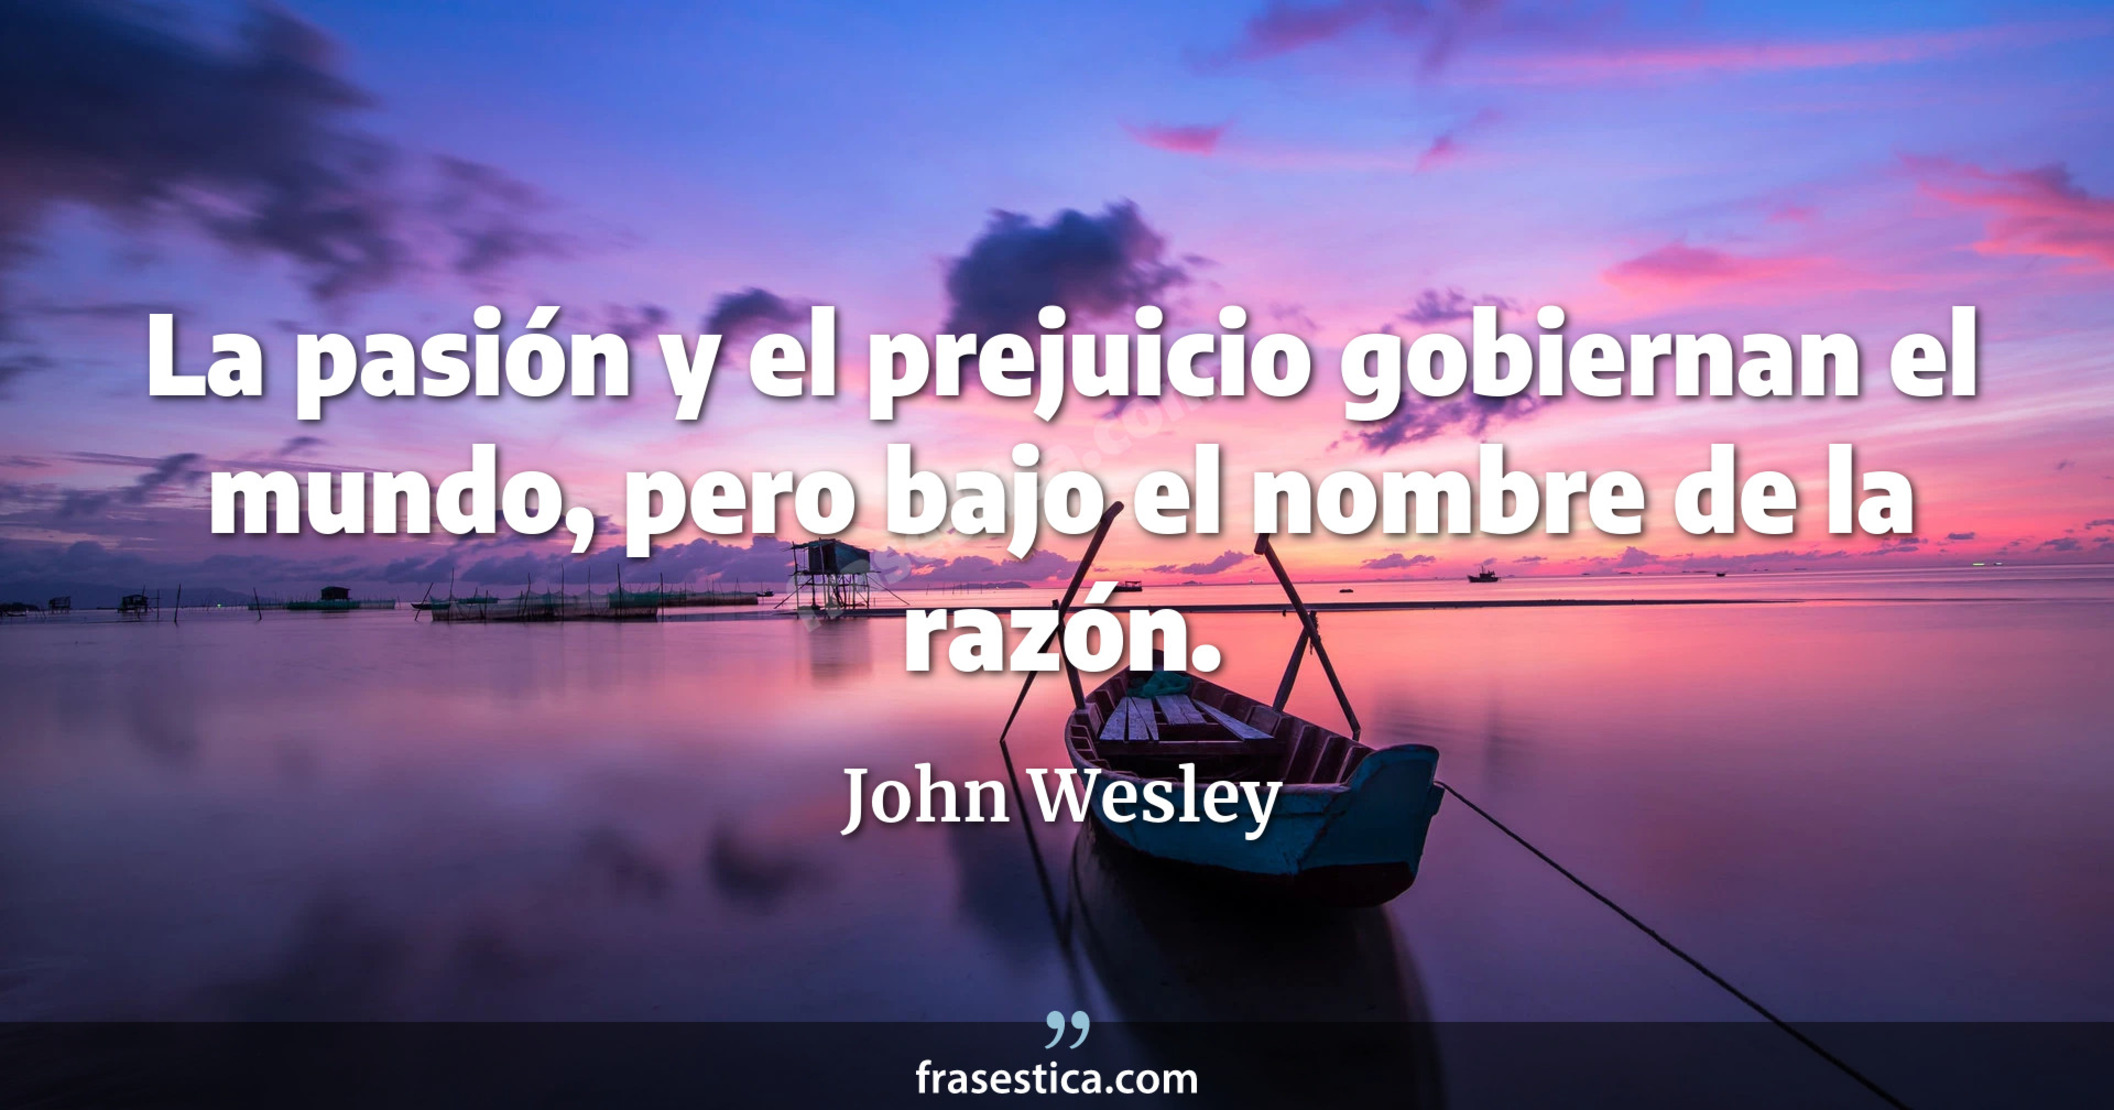 La pasión y el prejuicio gobiernan el mundo, pero bajo el nombre de la razón. - John Wesley